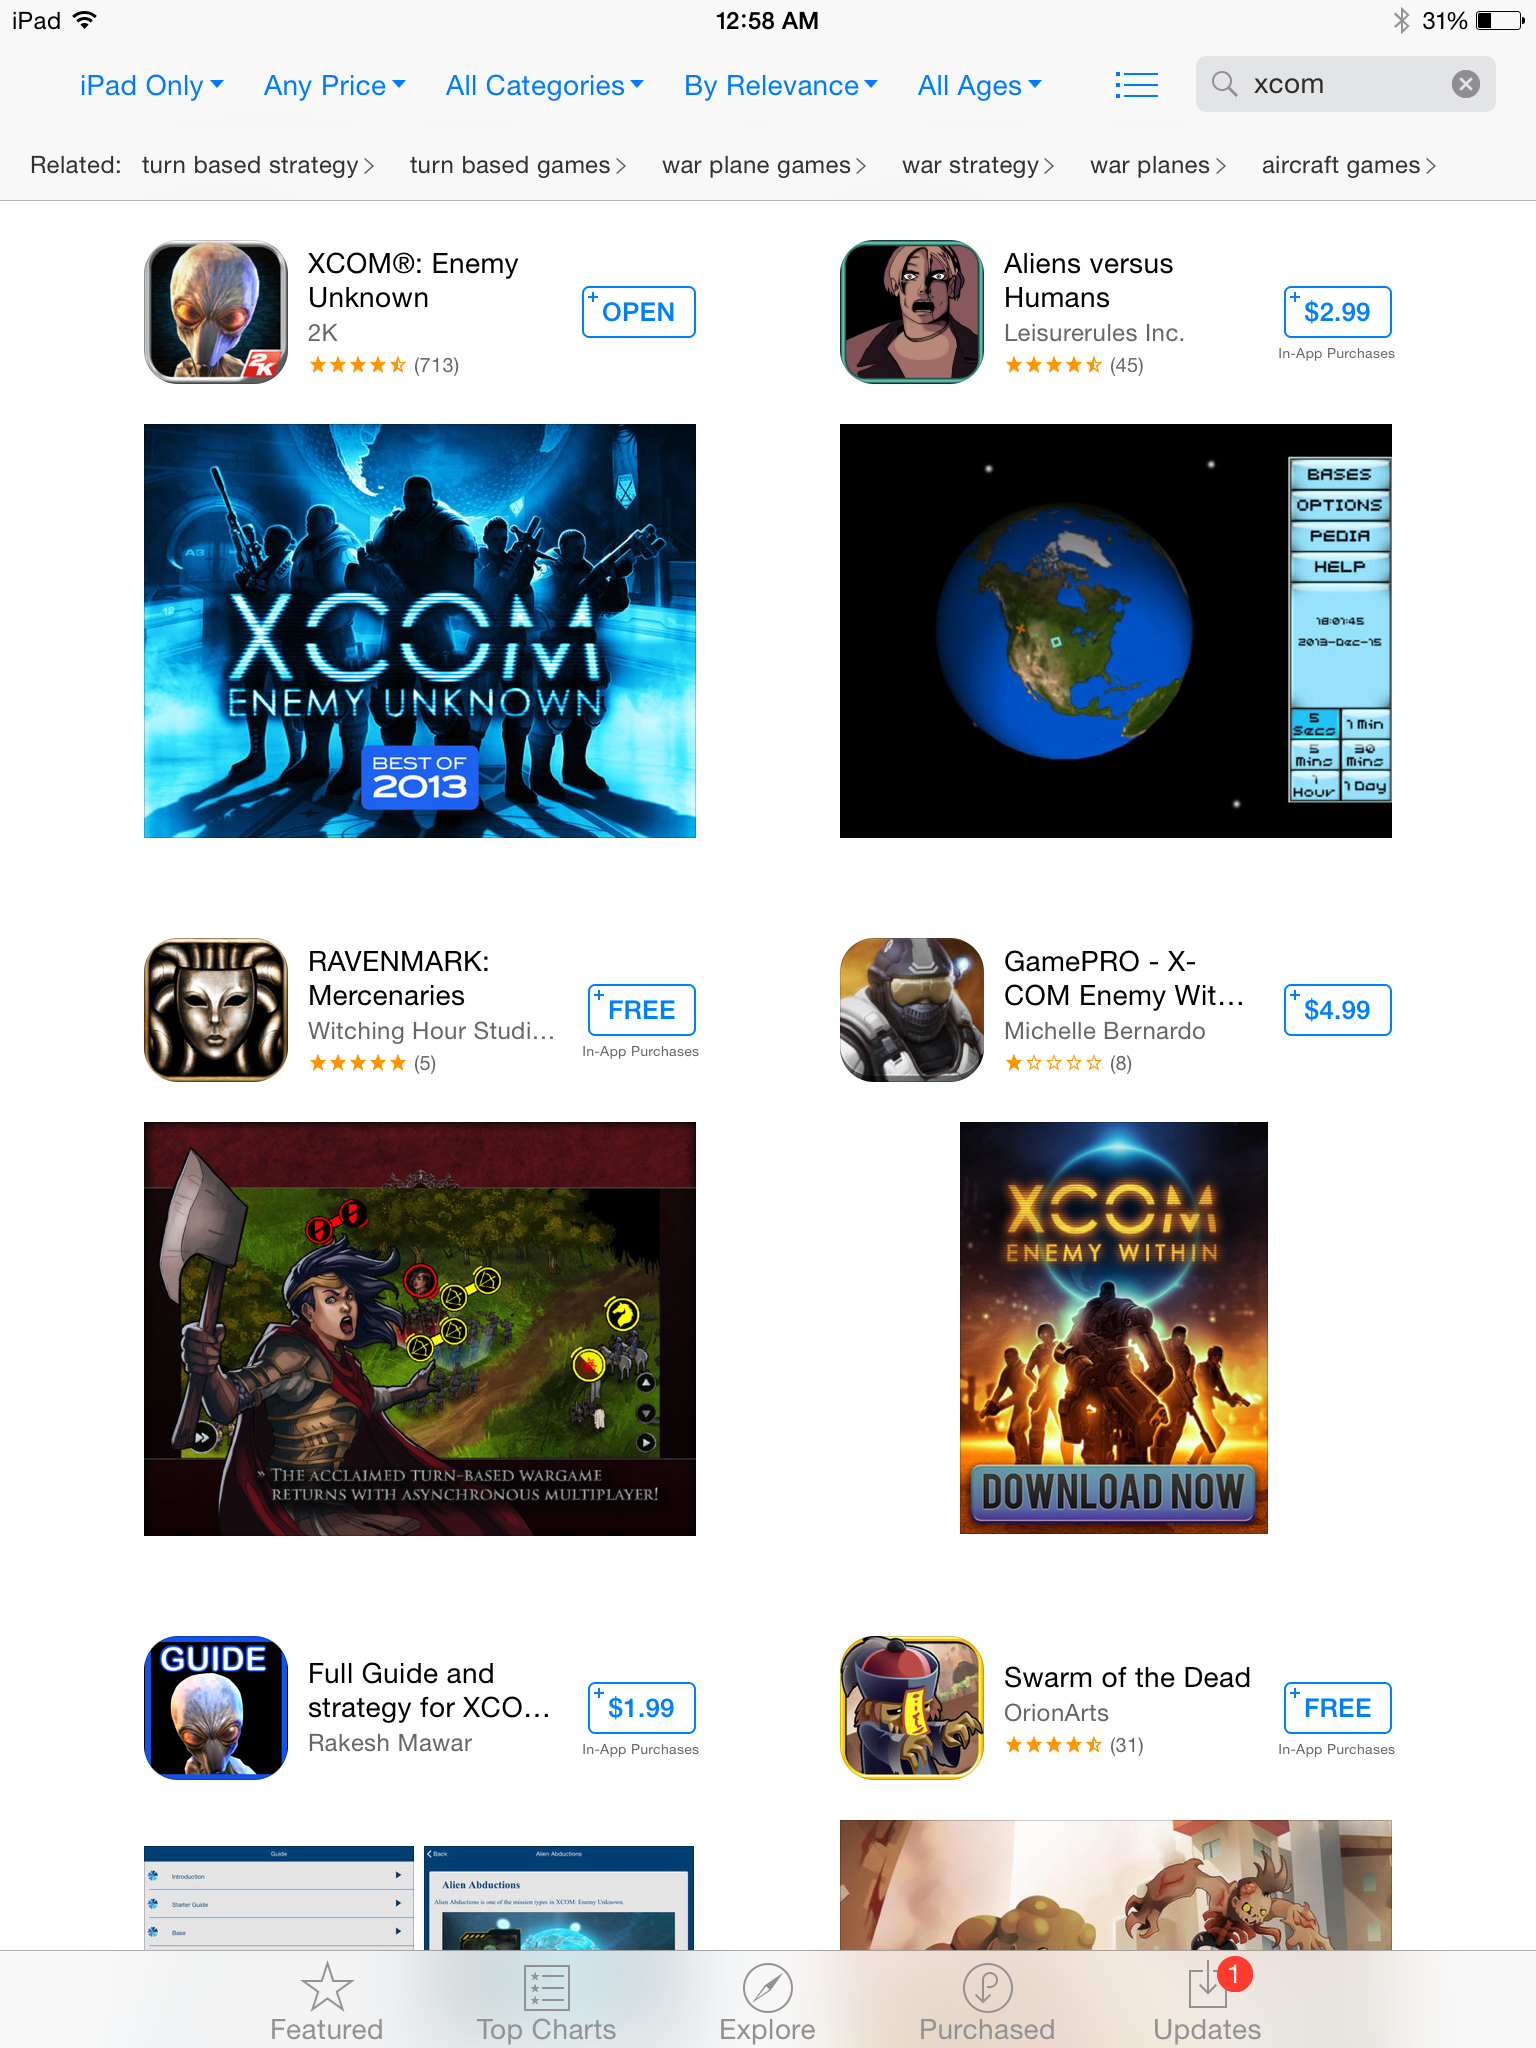 XCOM in the App Store